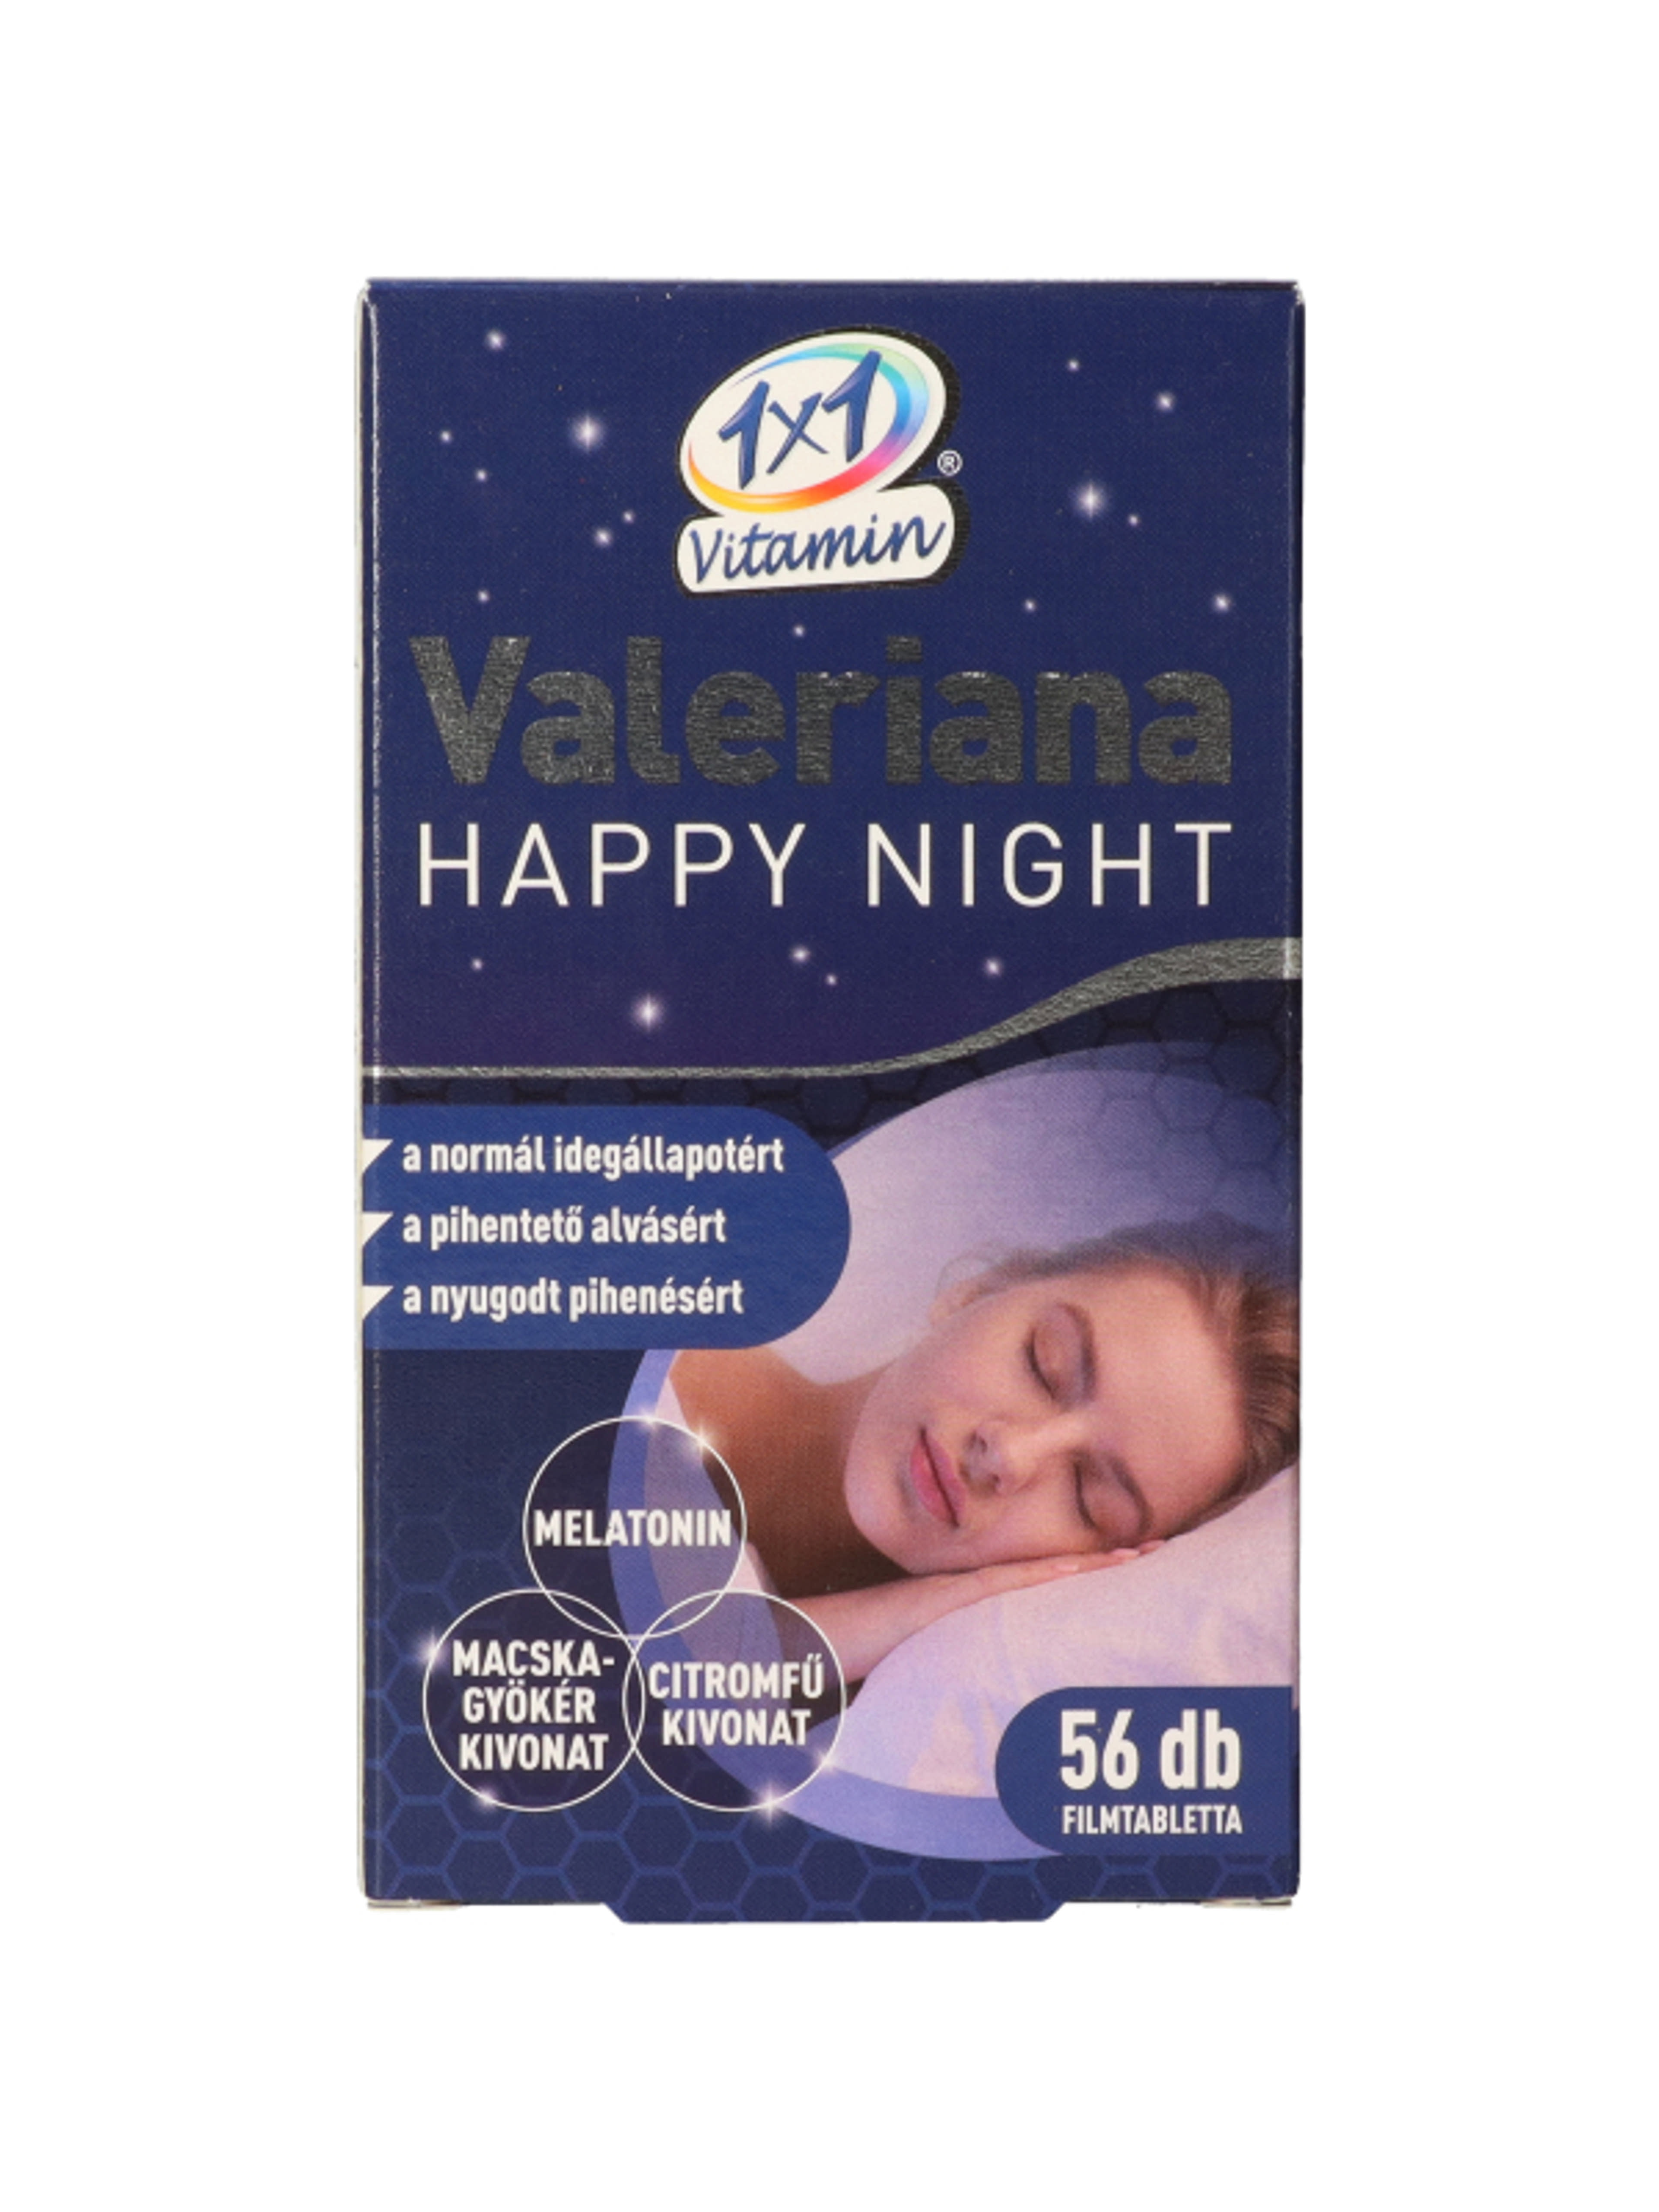 1x1 Vitamin Valeriana Happy Night filmtabletta - 56 db